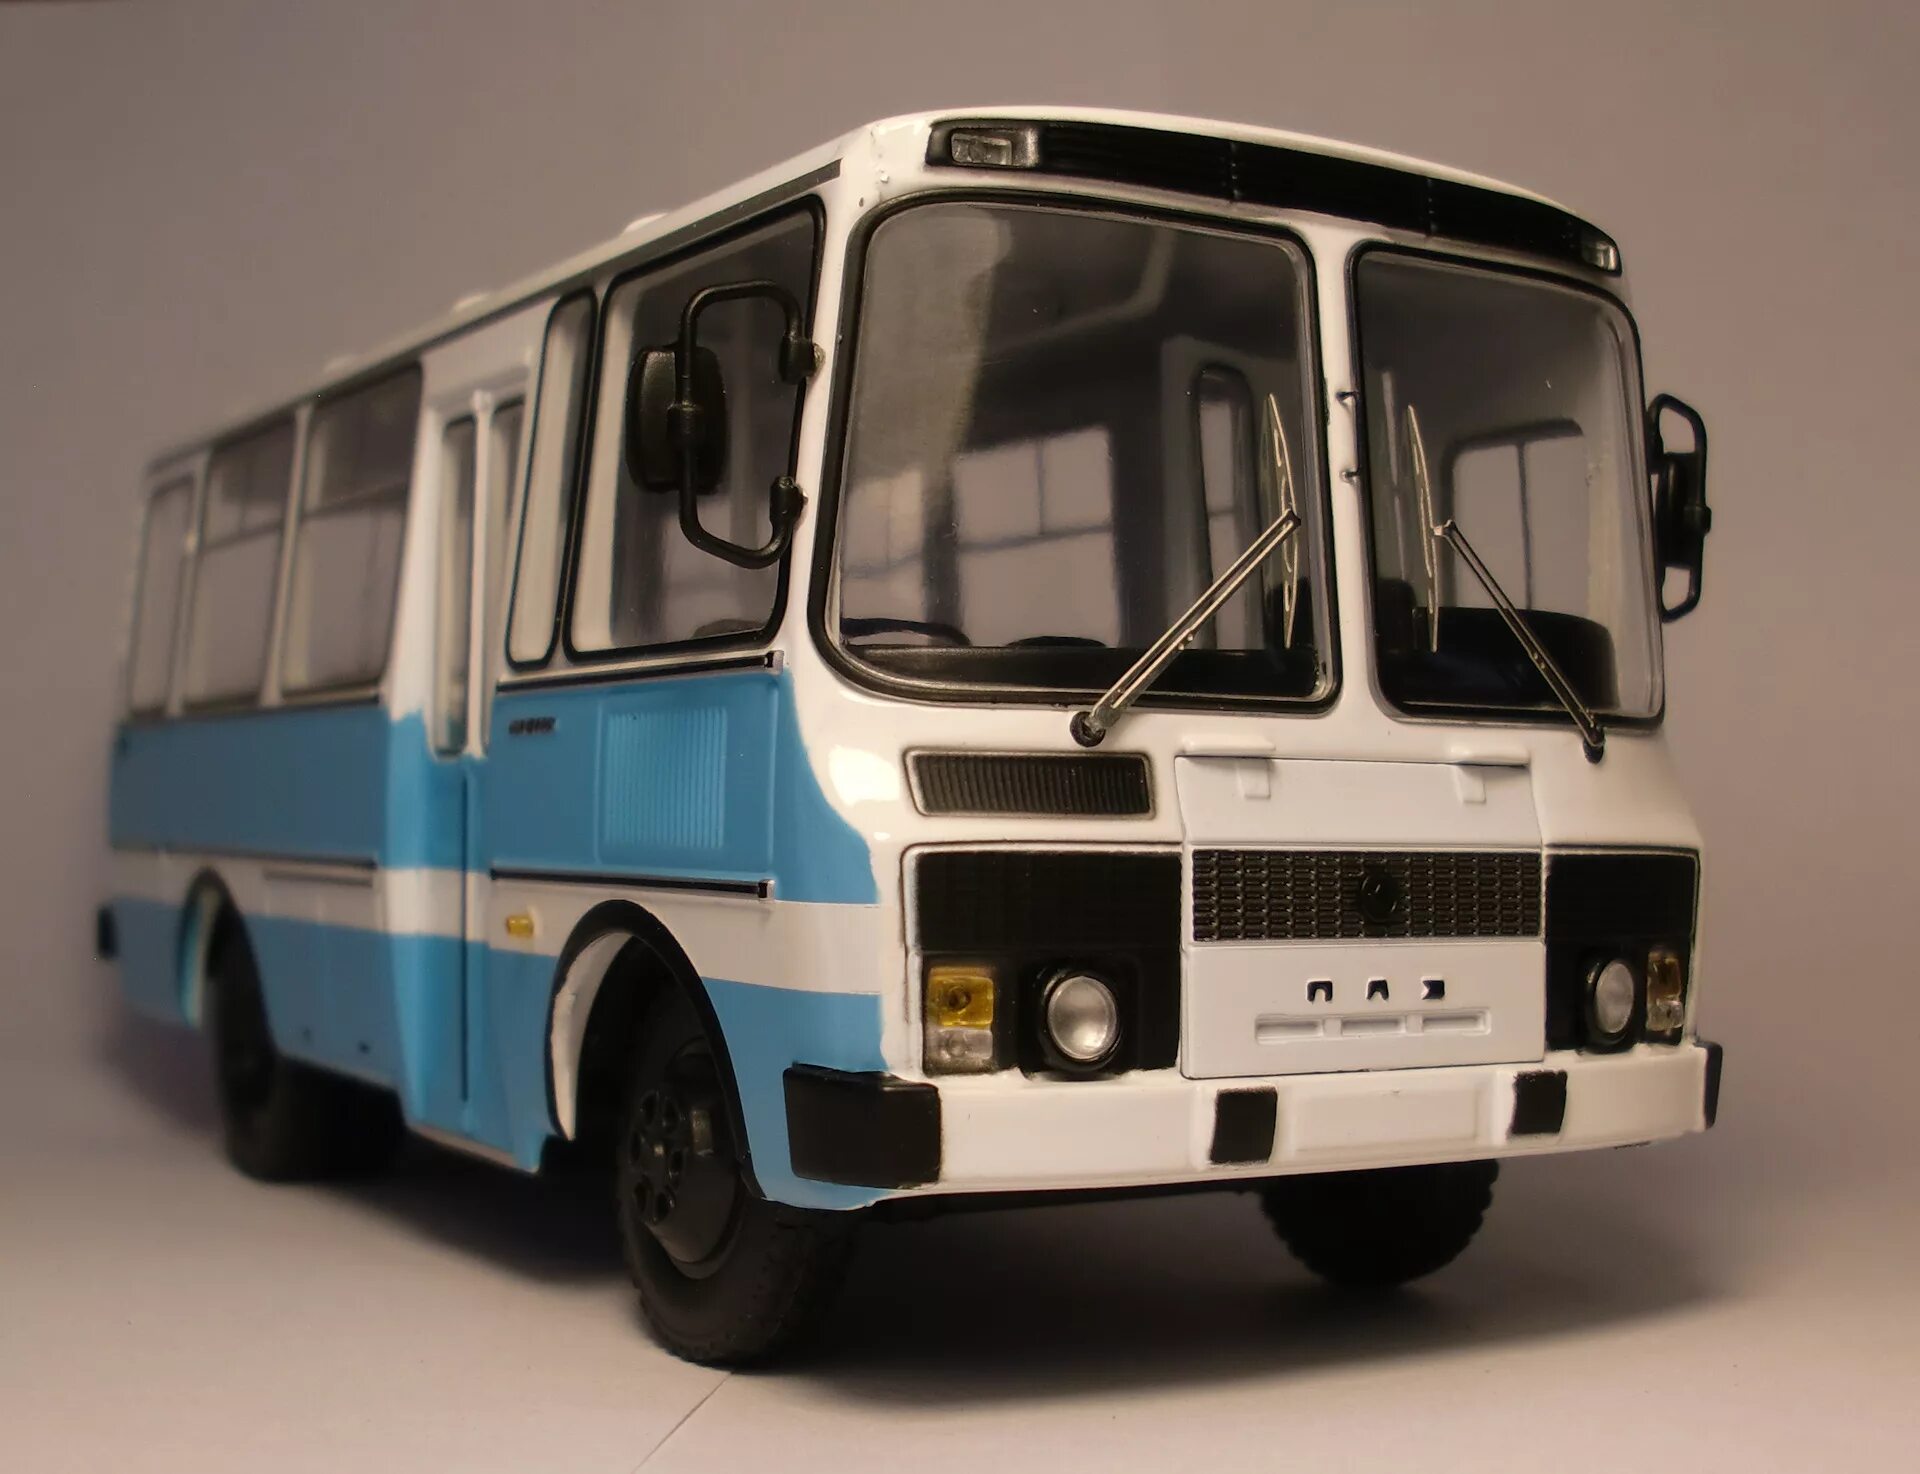 Колеса автобуса паз. ПАЗ-3205 автобус. ПАЗ 3205 Советский. ПАЗ 3205 AVD. ПАЗ 3205 1989.